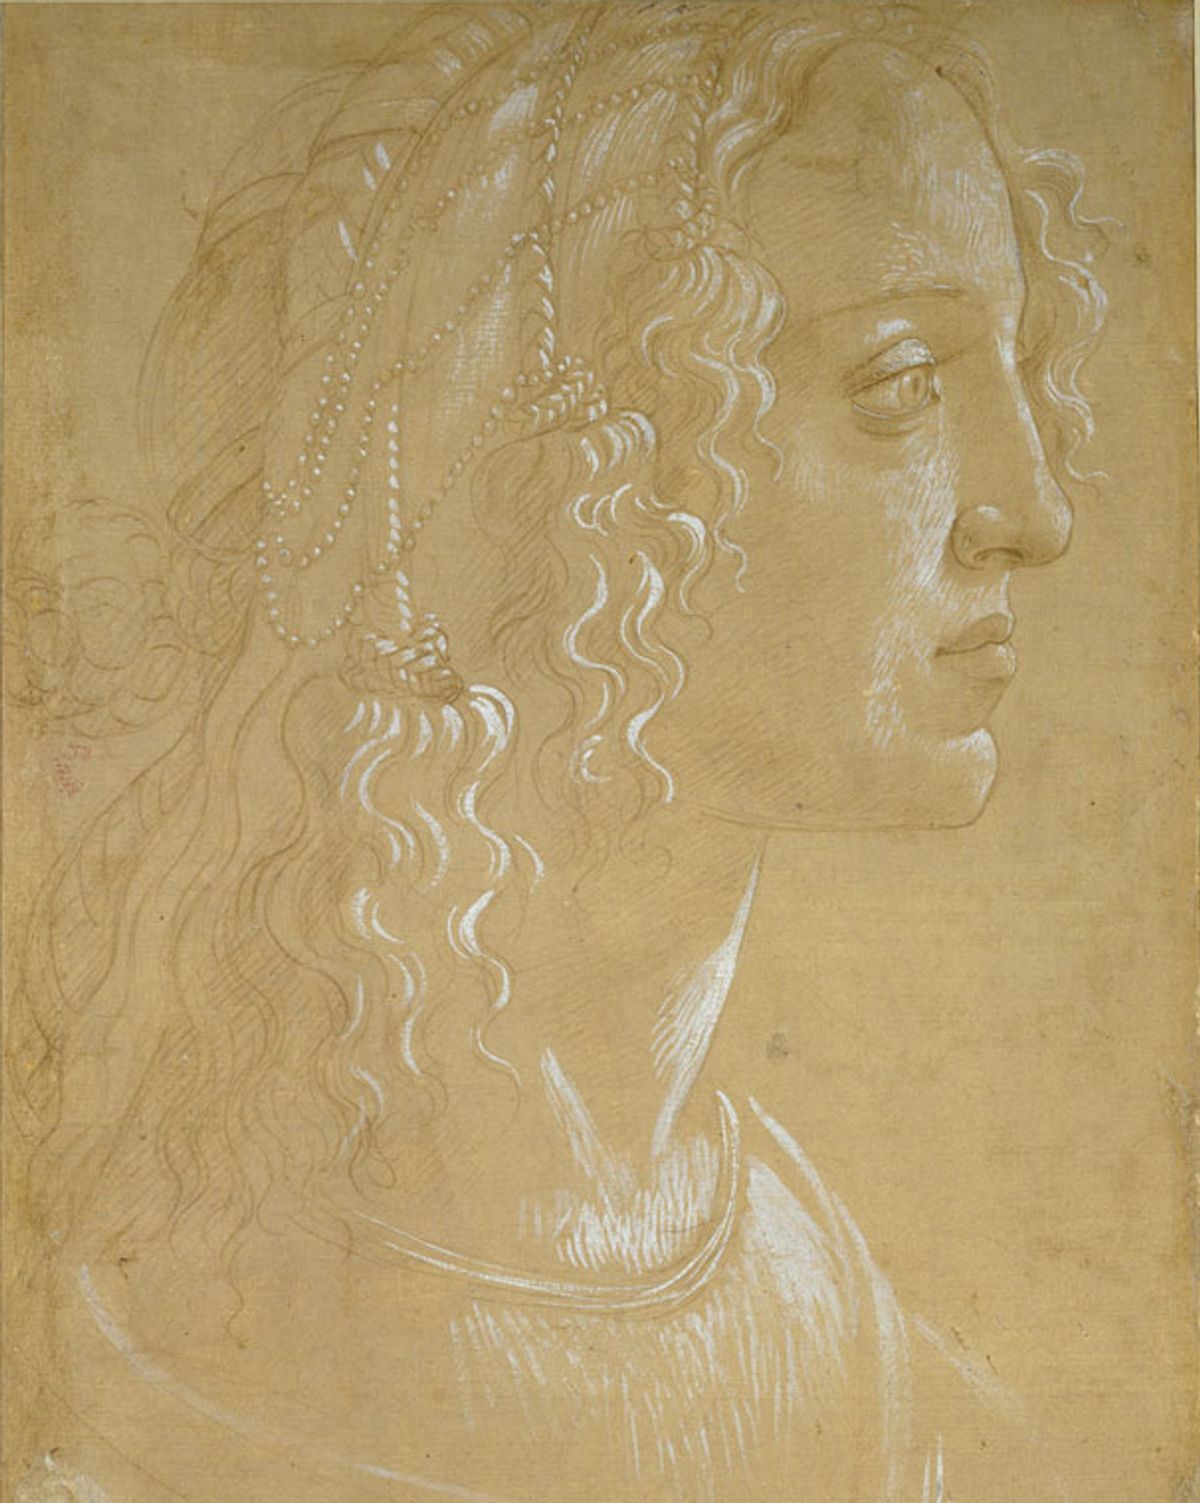 Sandro Botticelli's Study of the head of a woman in profile "La Bella Simonetta" (around 1485) was drawn using white gouache on light-brown prepared paper ©️ Ashmolean Museum